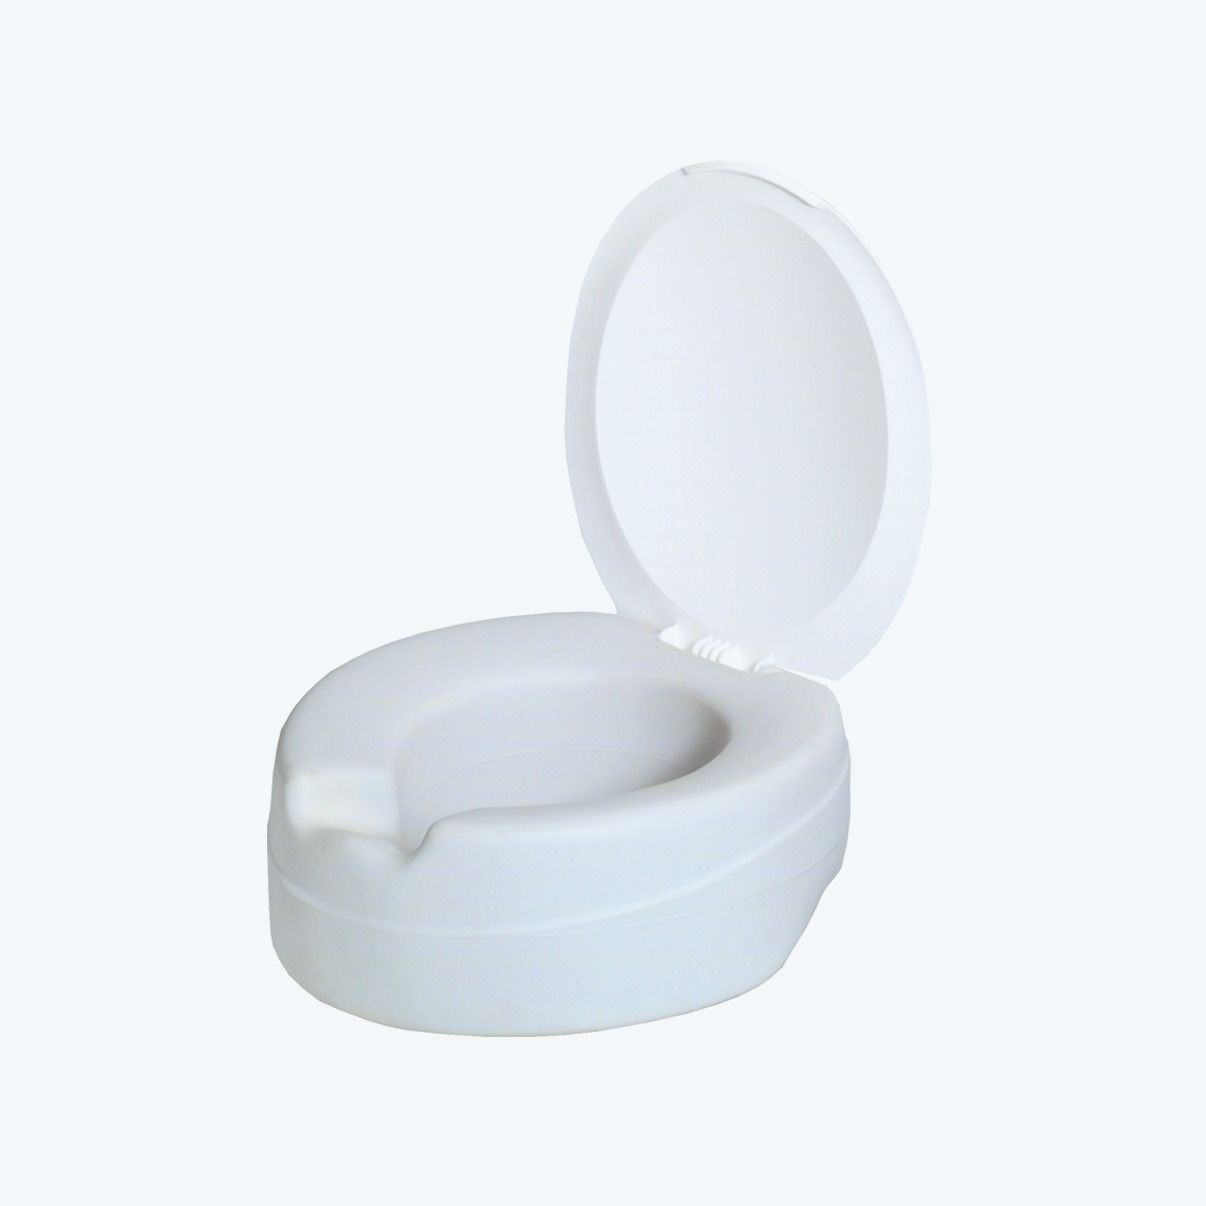 Protection lunette WC automatique : Devis sur Techni-Contact - Couvre siège  toilette